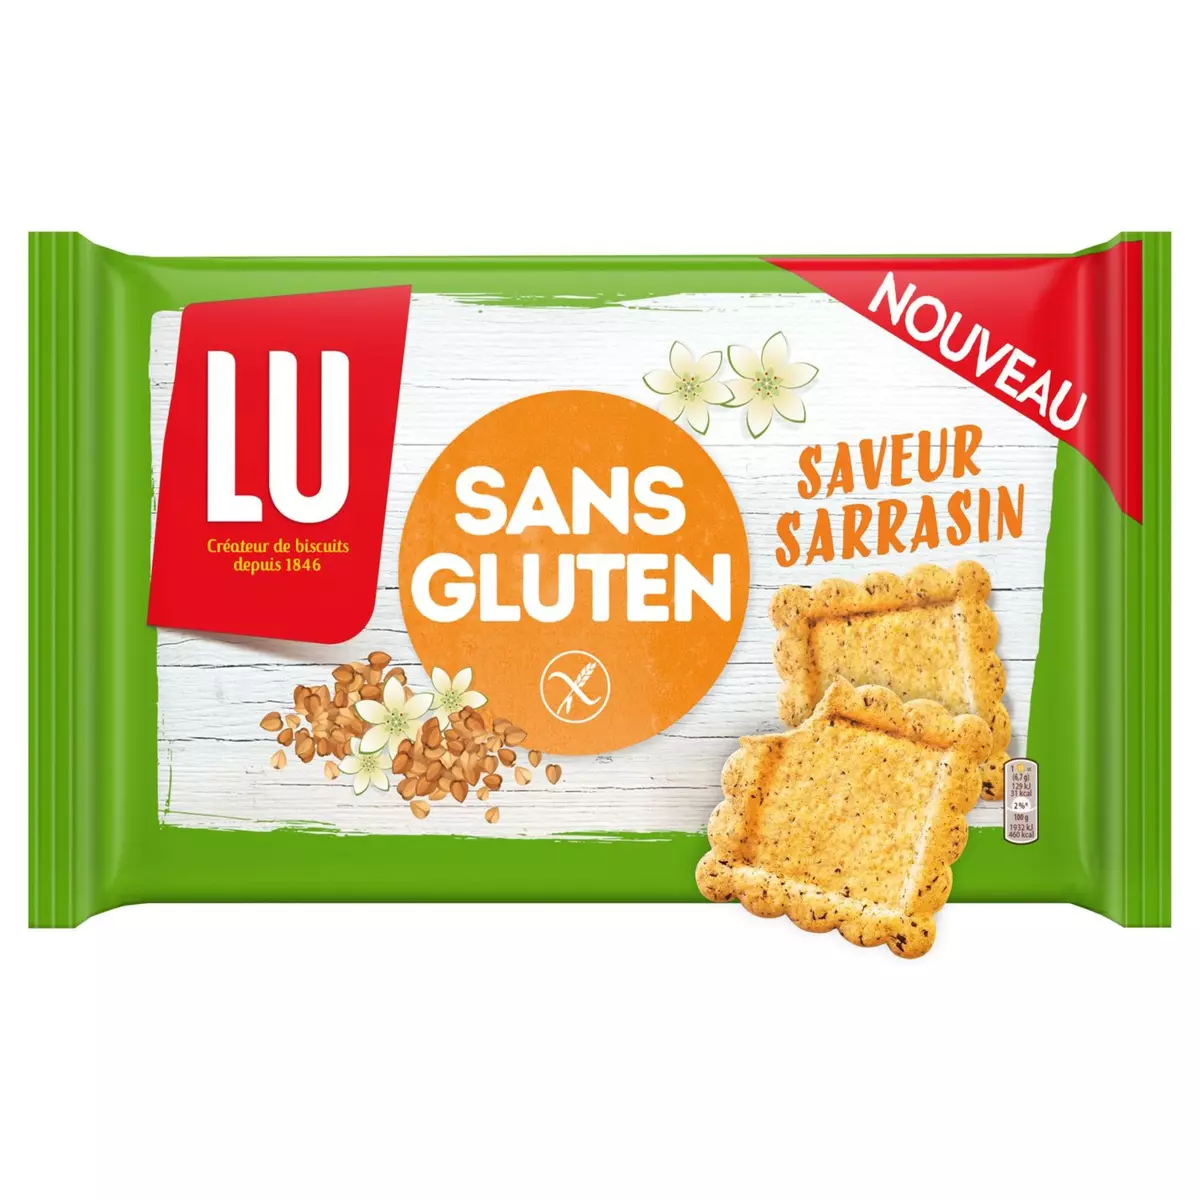 LU Lu biscuit sarrasin sans gluten 240g